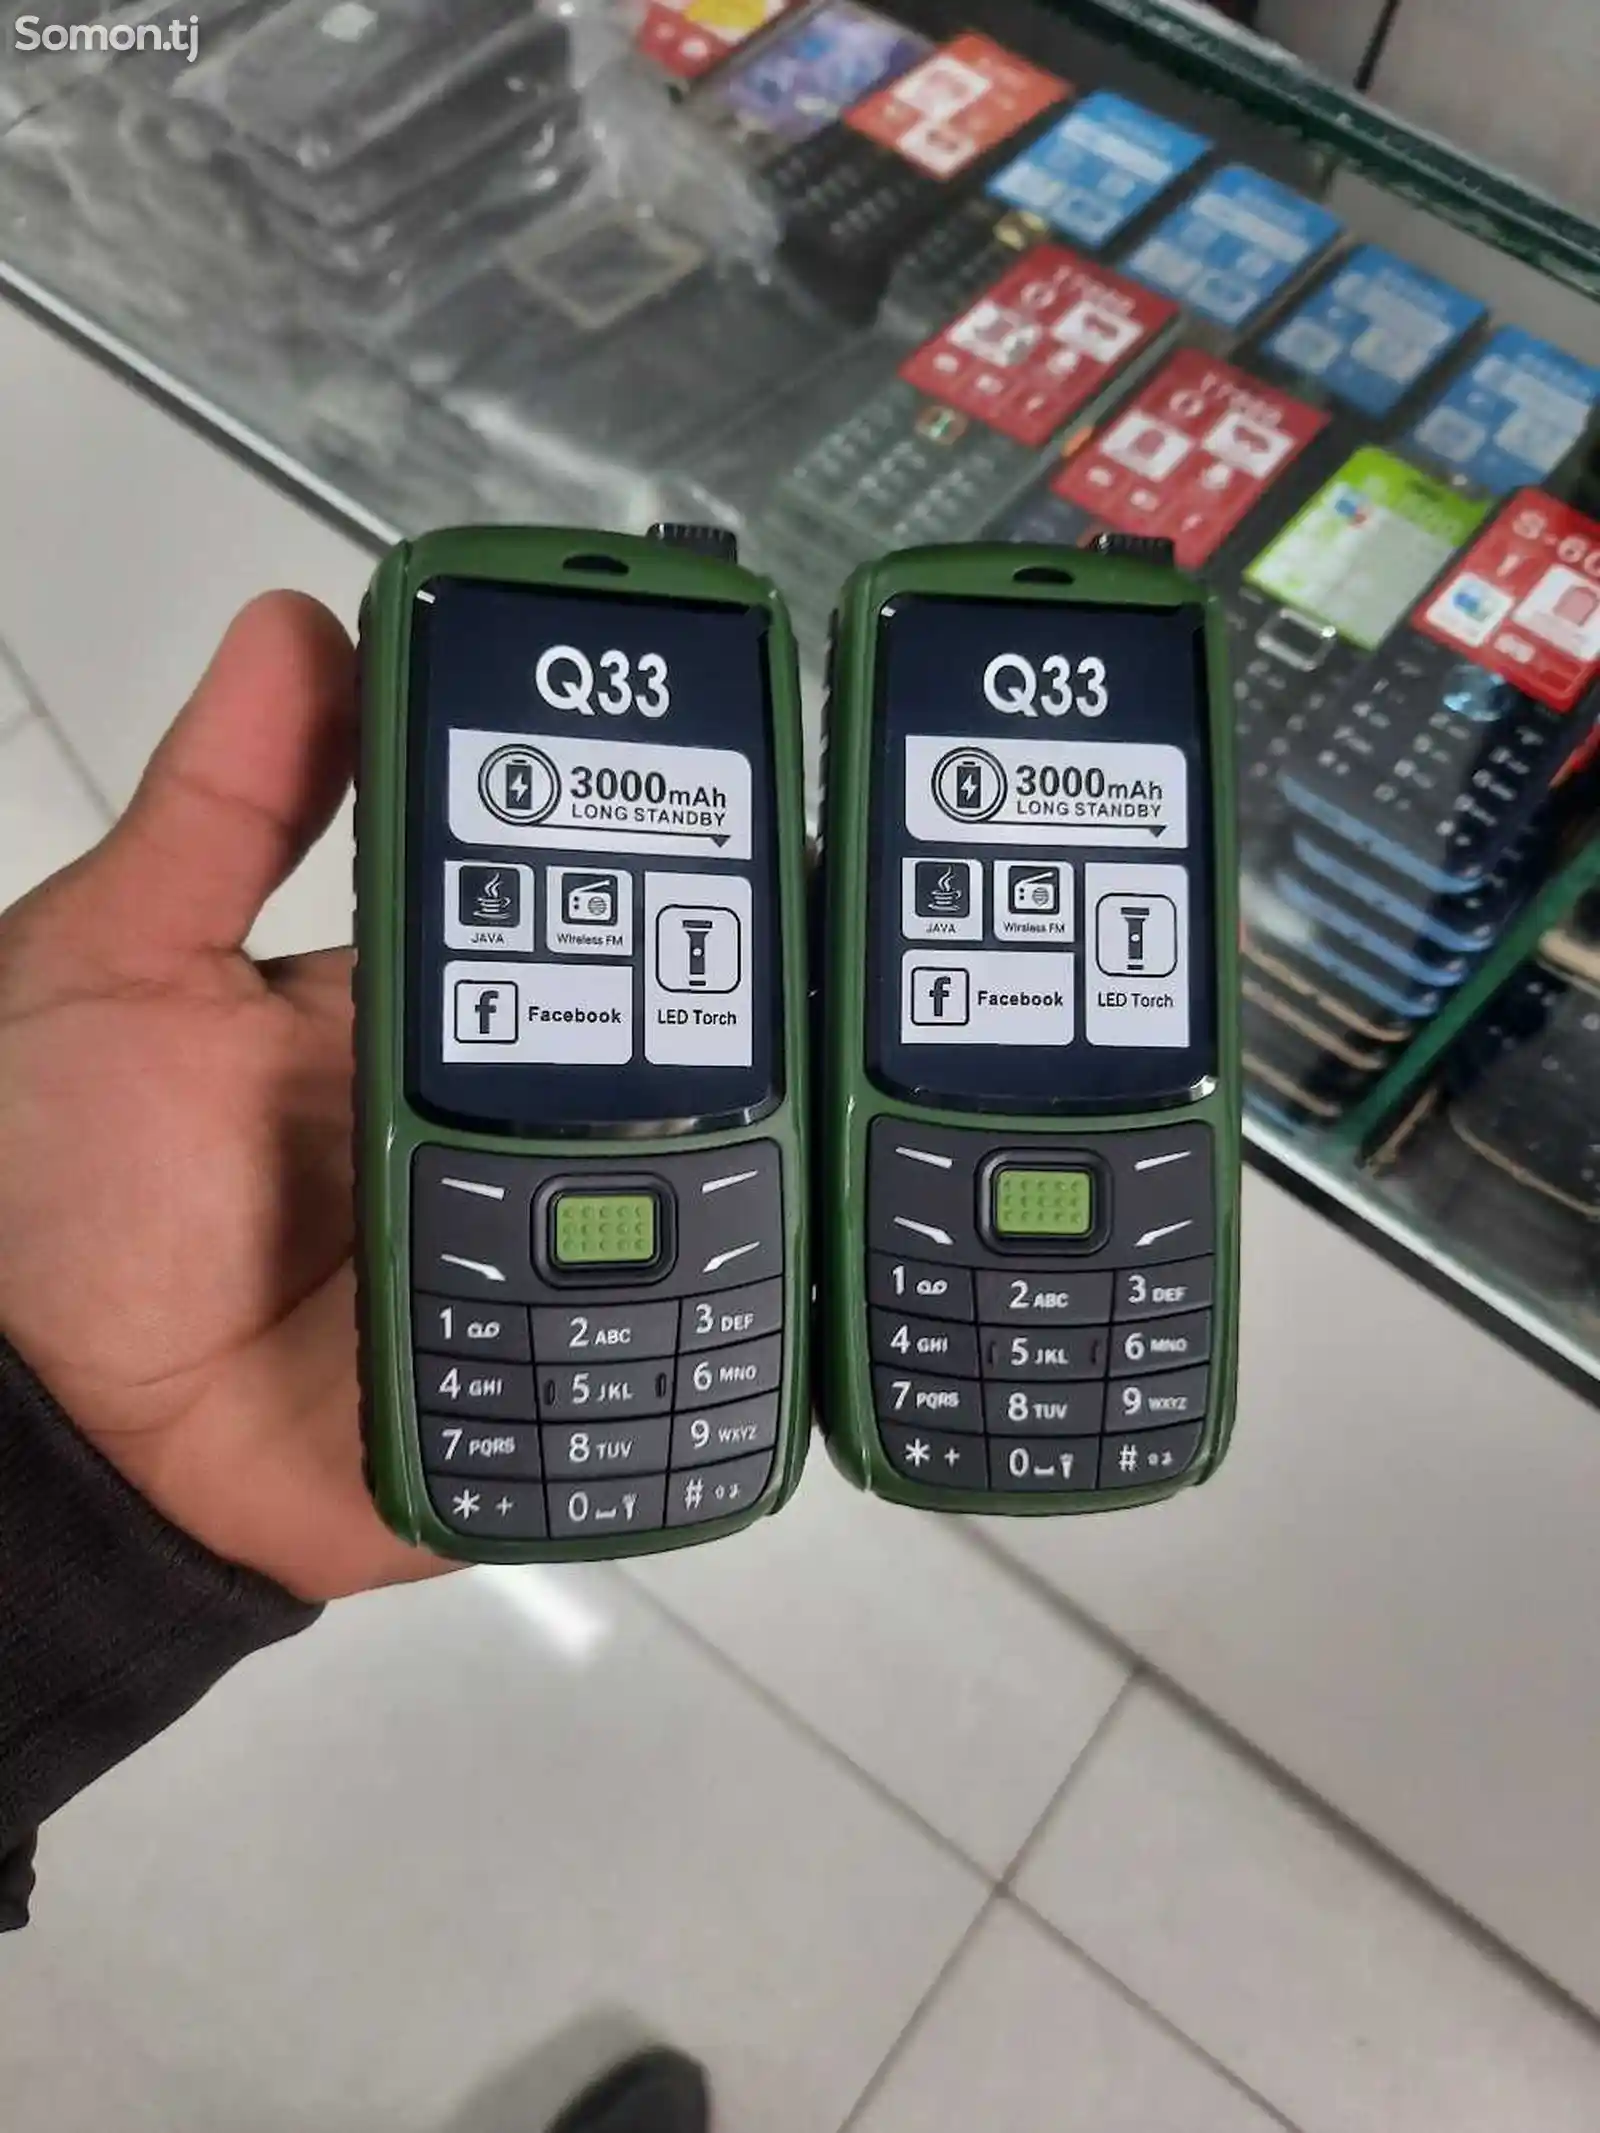 Nokia Q33-1